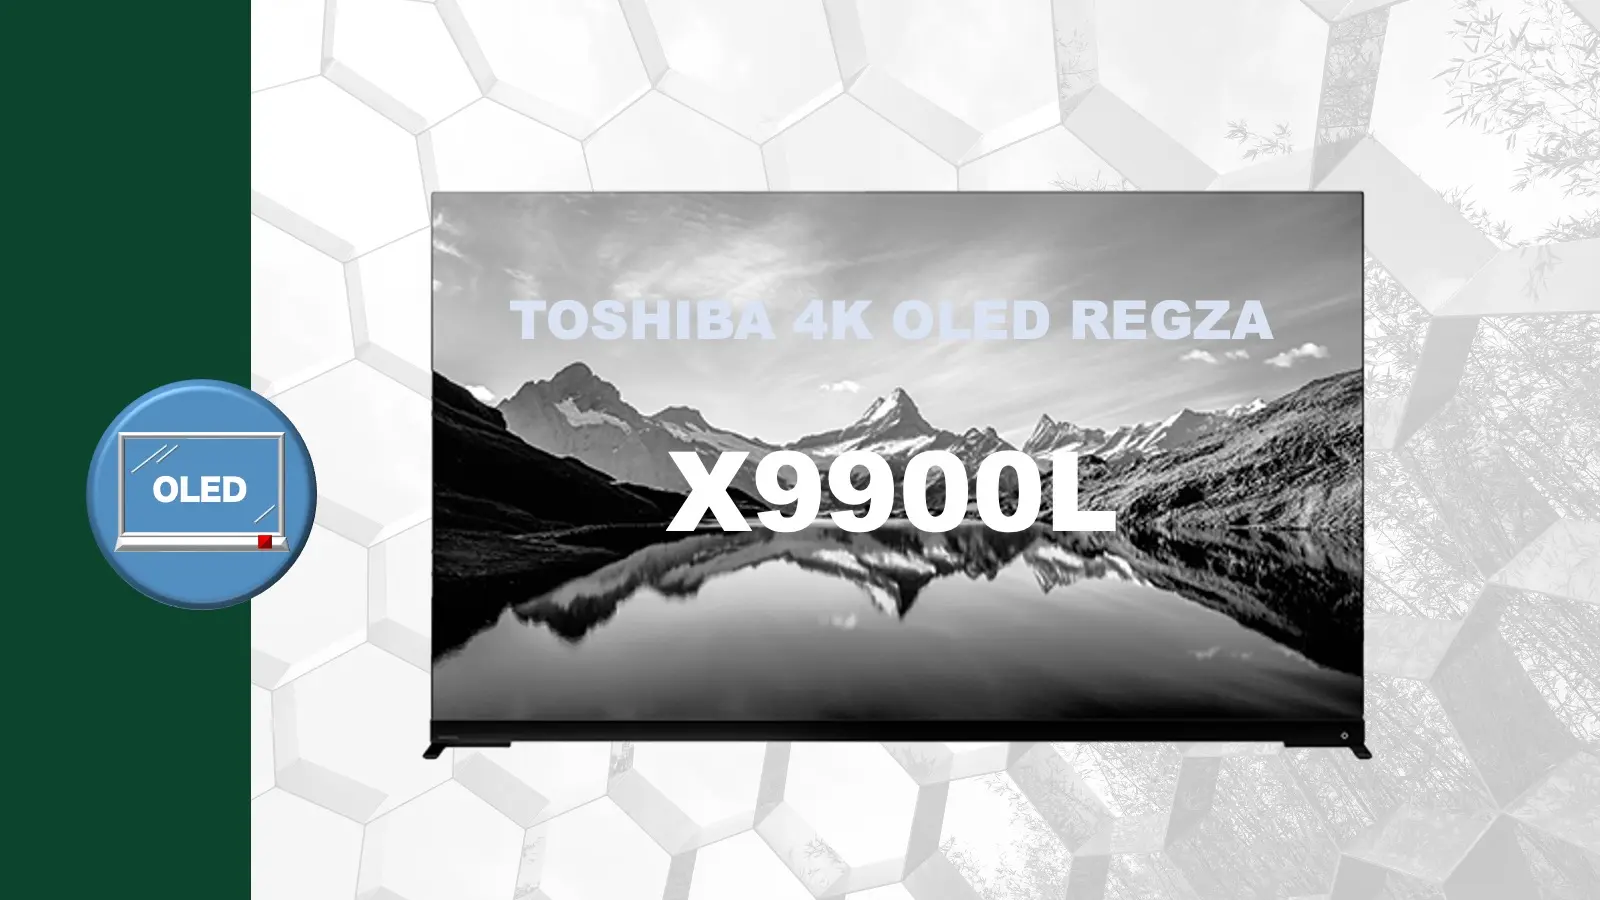 TVS(東芝) REGZA 4K有機ELレグザ X9900Lレビュー記事用のオリジナルアイキャッチ画像